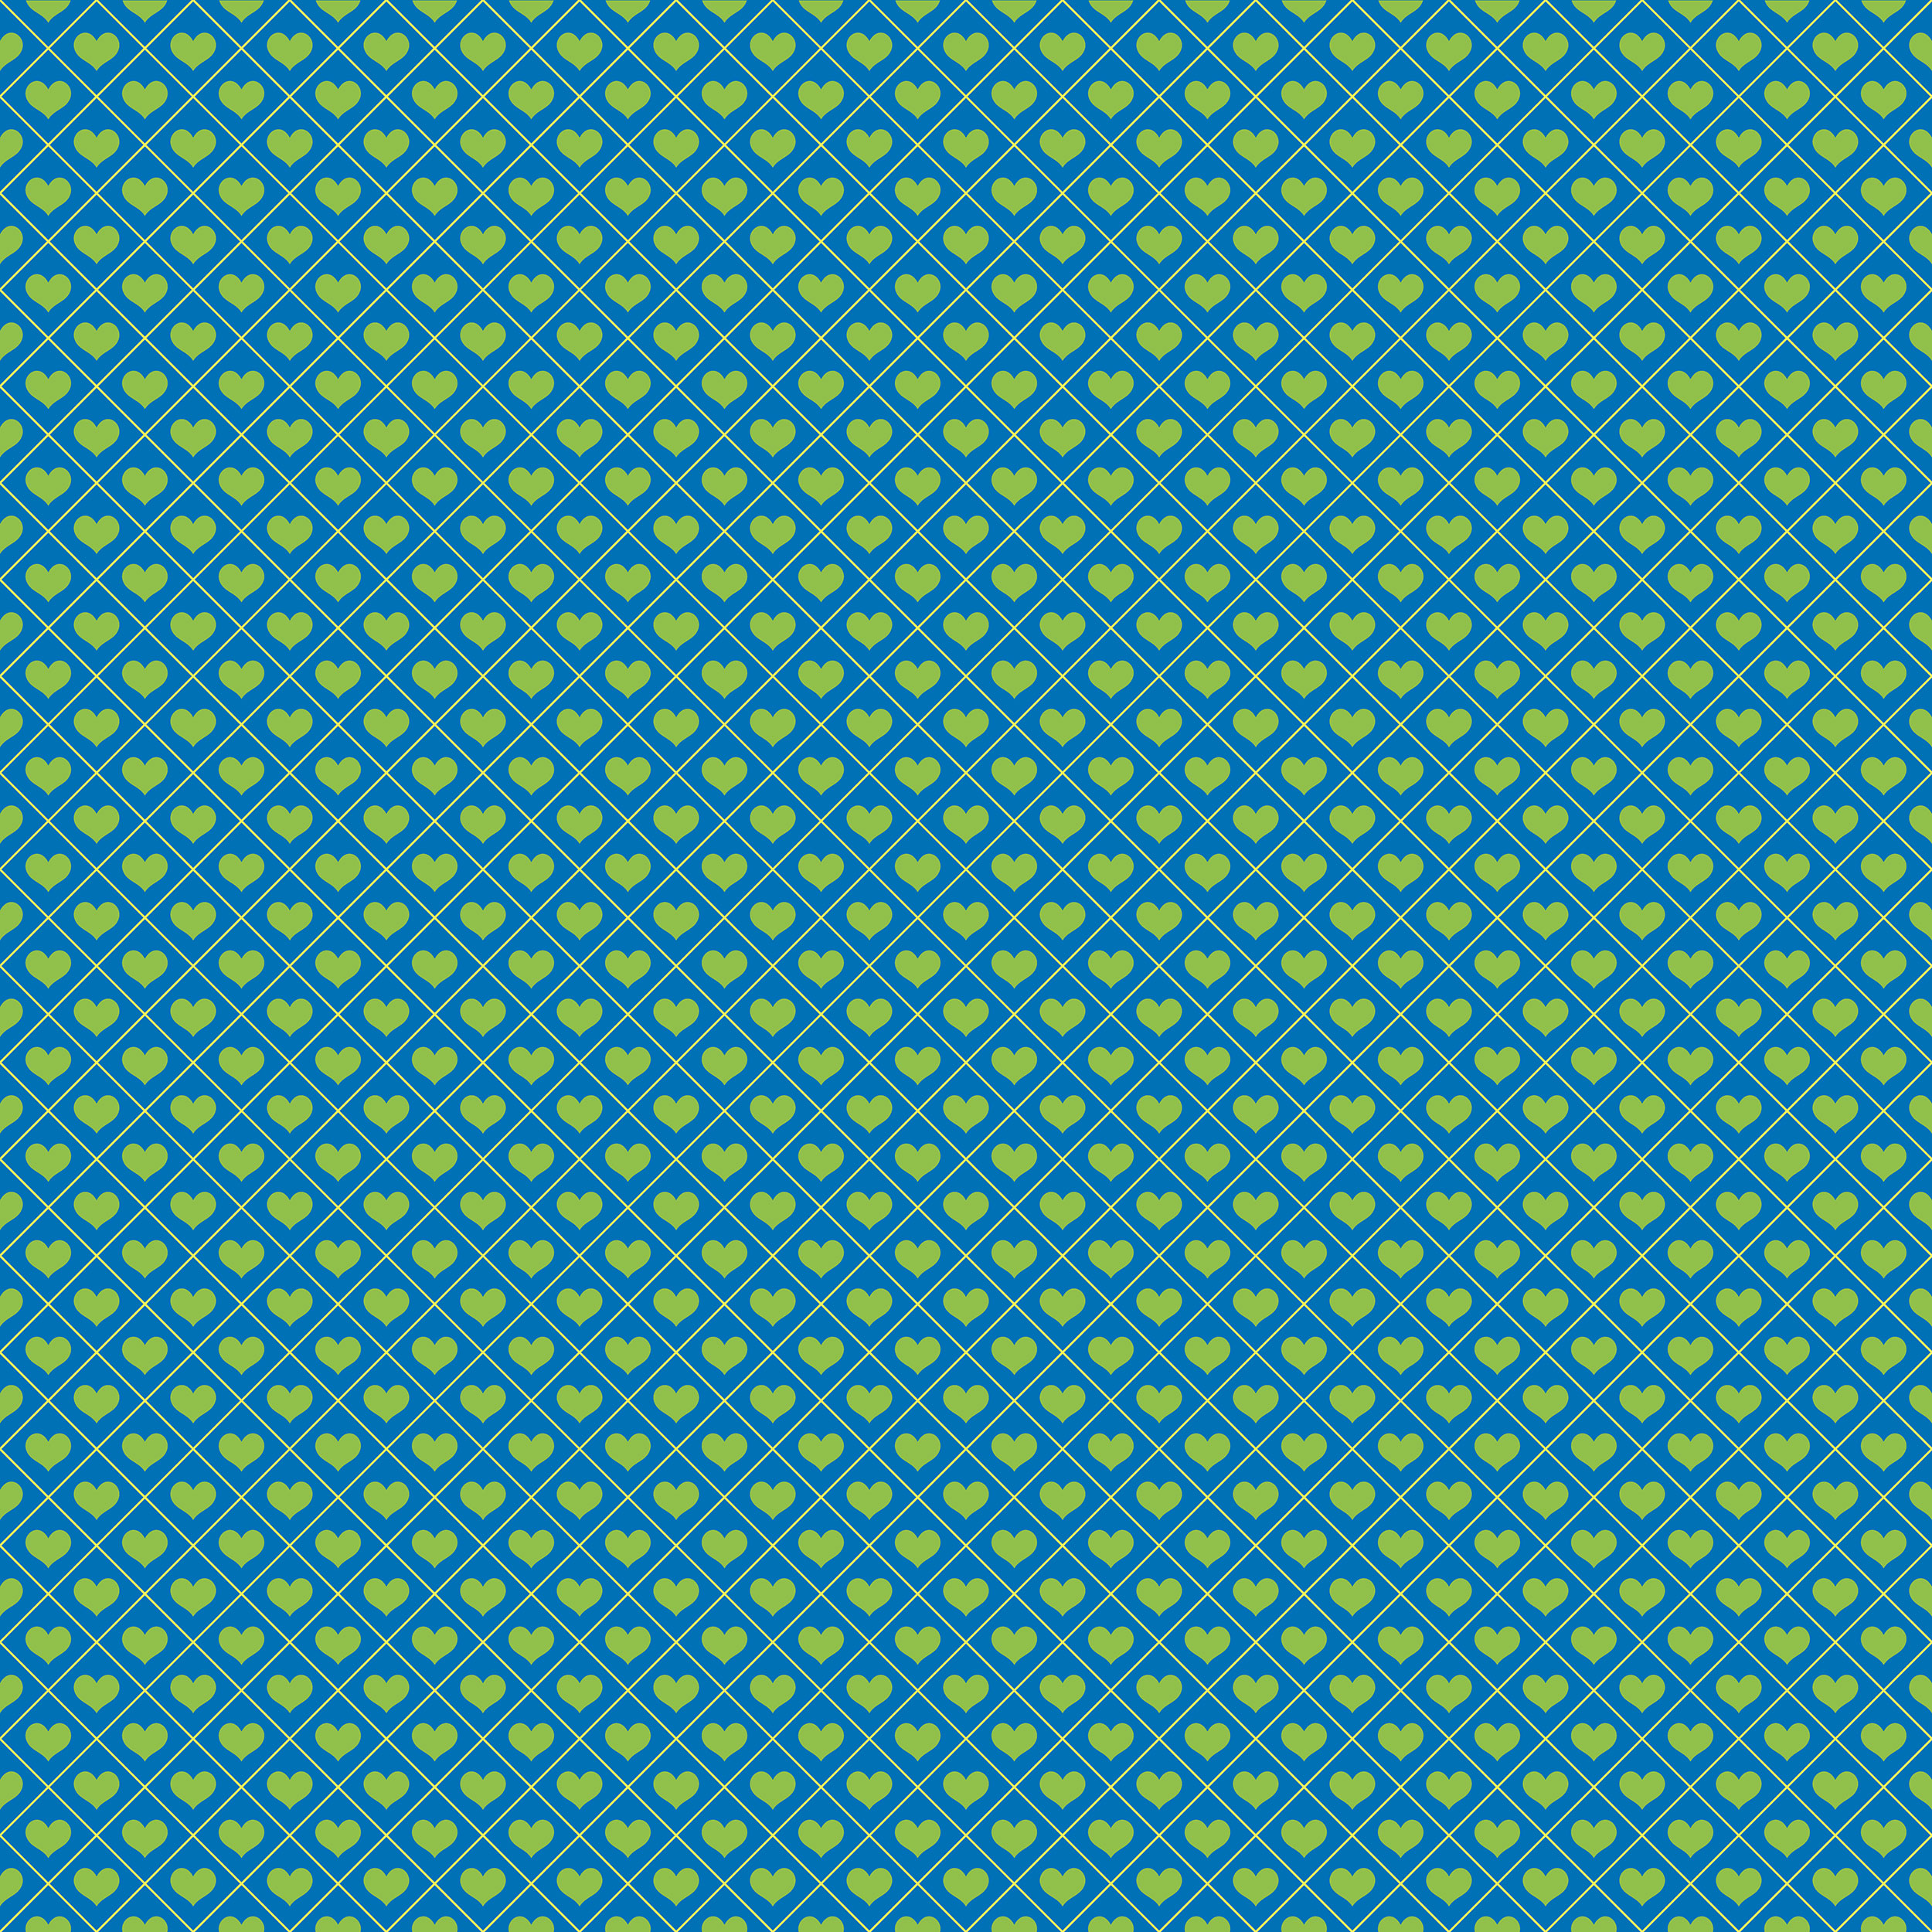 ハートデザインの壁紙 背景素材 無料画像no 255 二色ハート 青緑